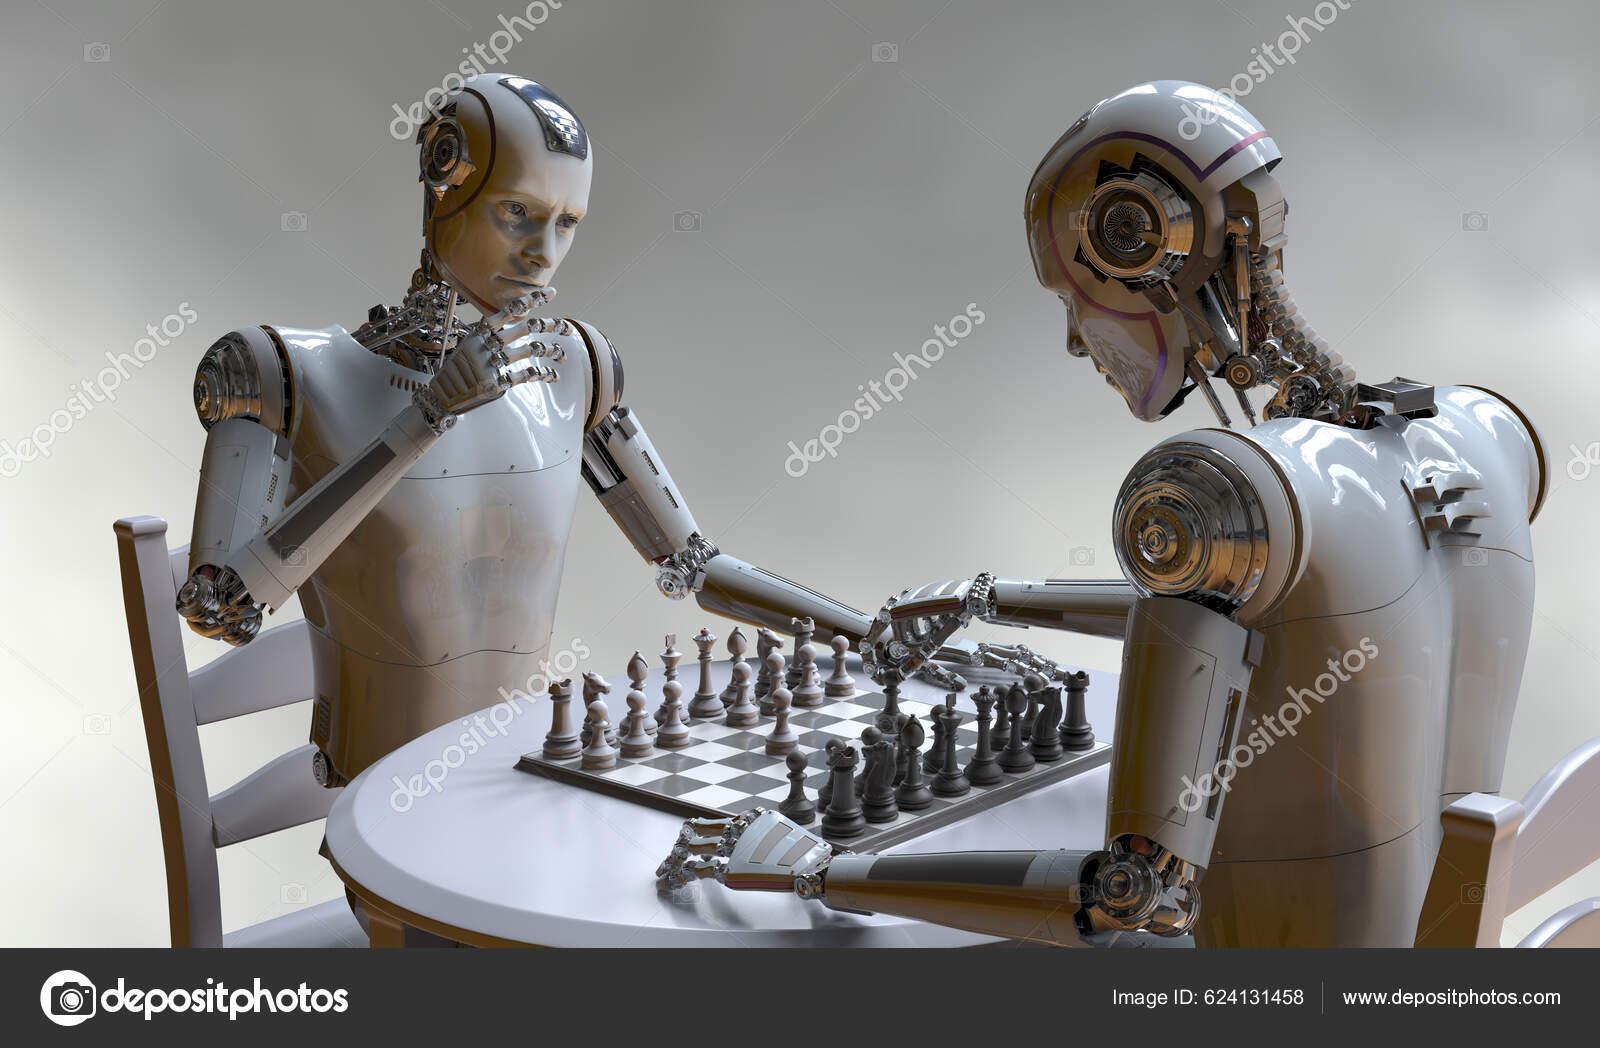 Um robô está jogando um jogo com uma pessoa ao fundo